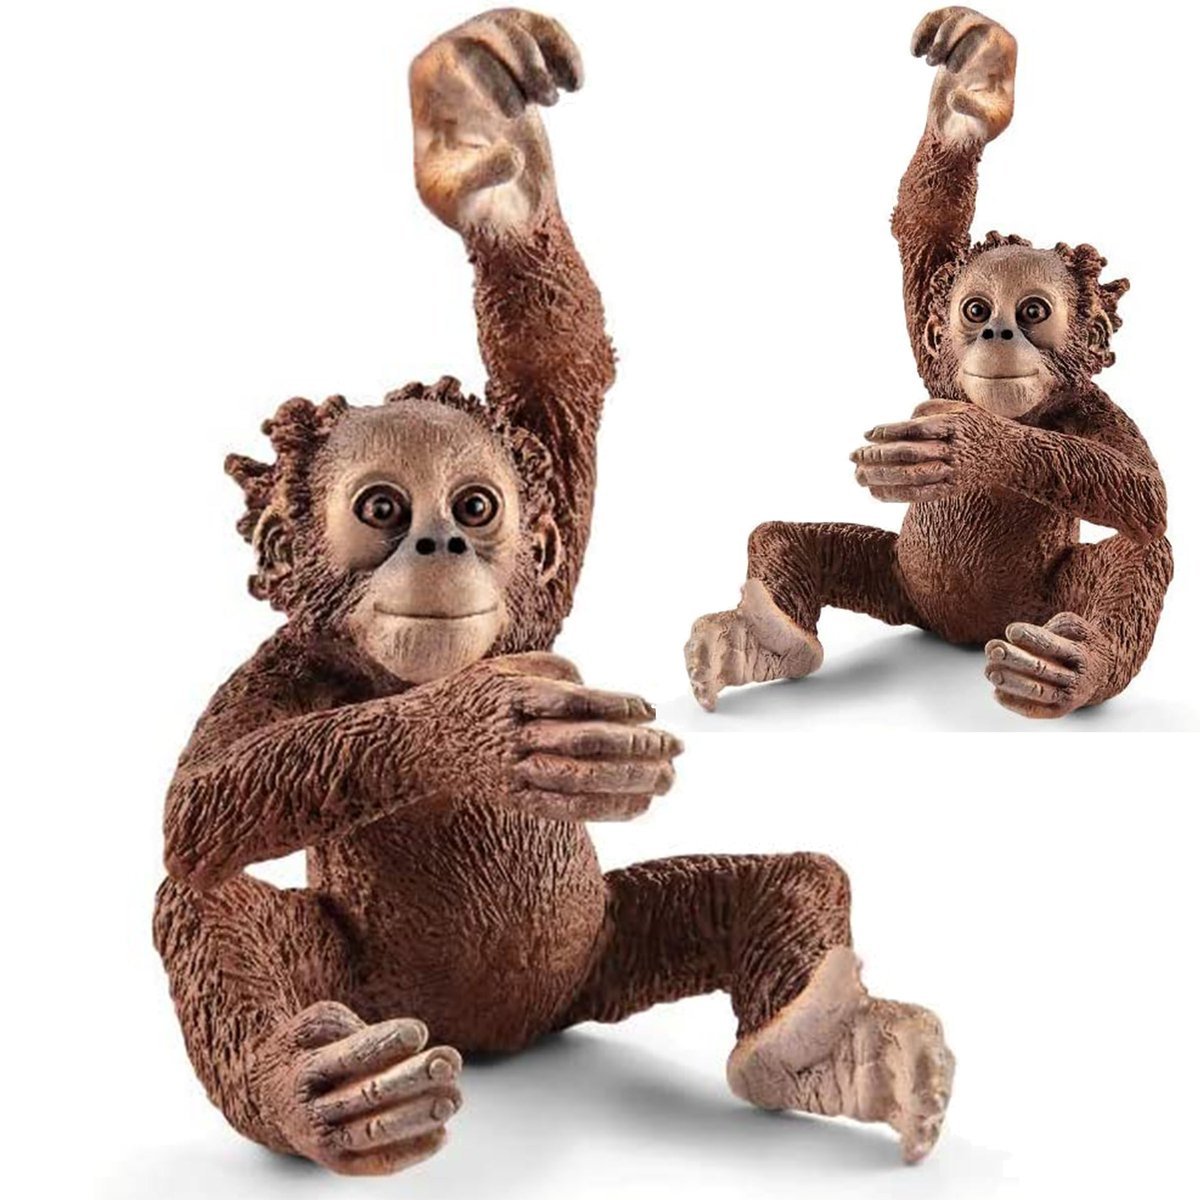 SCHLEICH Wild Life Figurka Małpa Młody Orangutan 14776